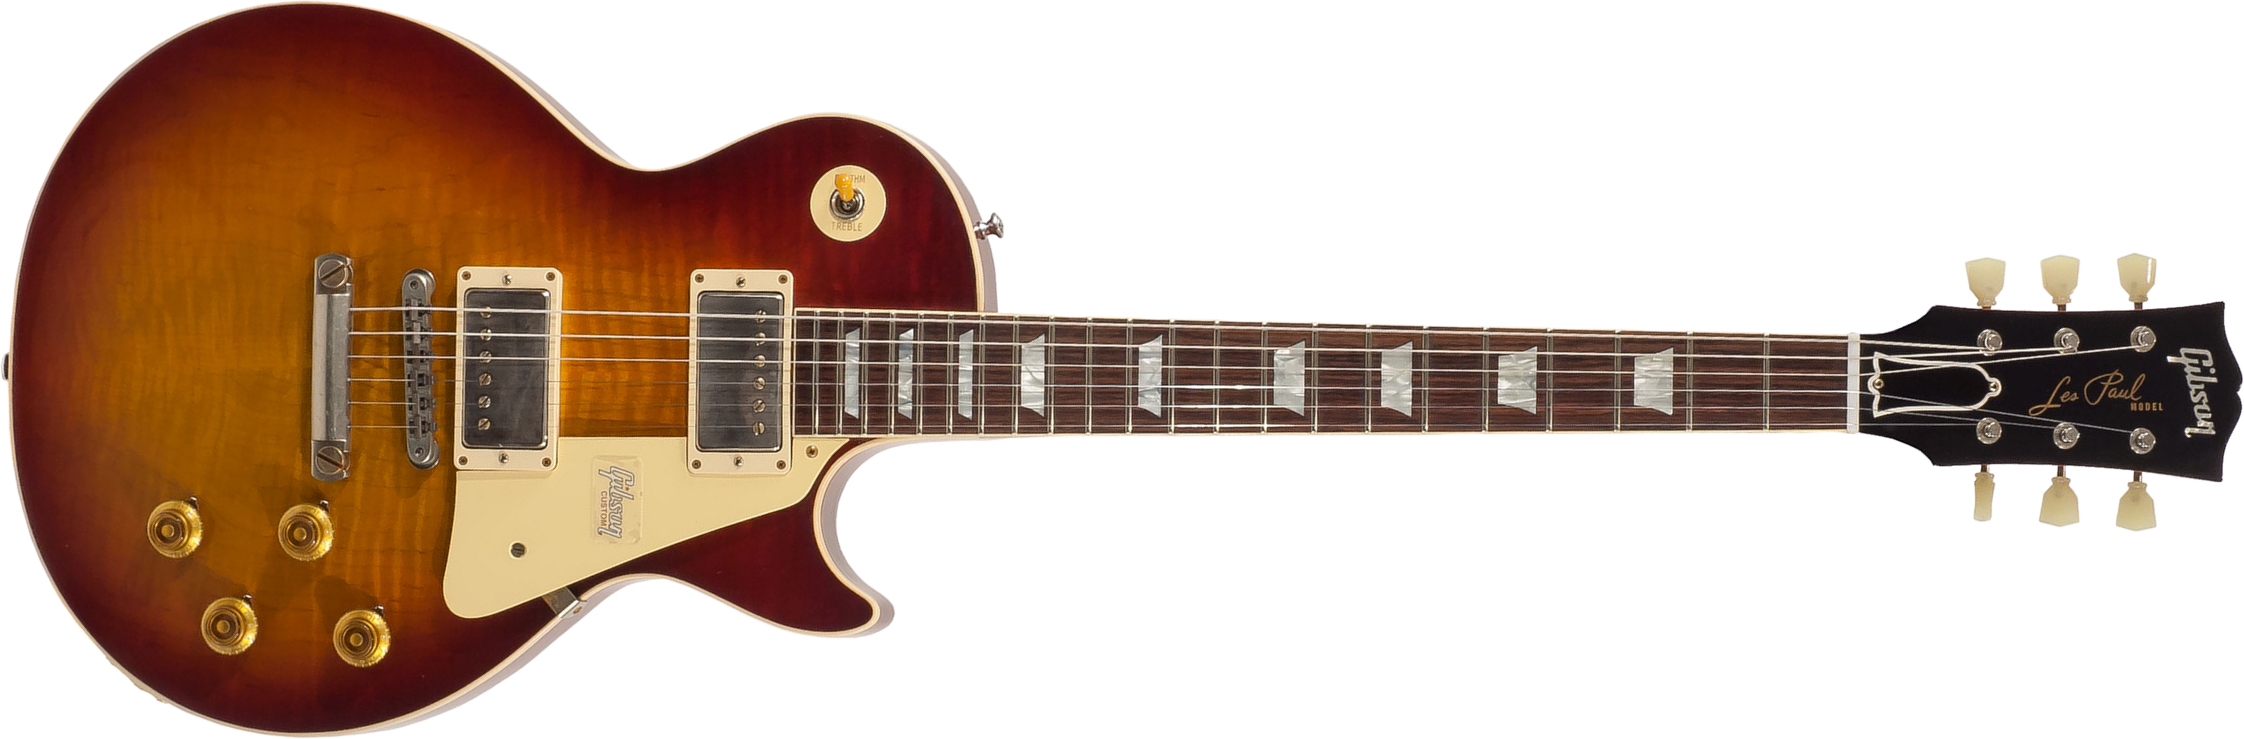 Gibson Custom Shop Les Paul Standard 1959 2h Ht Rw - Vos Vintage Cherry Sunburst - Guitarra eléctrica de corte único. - Main picture